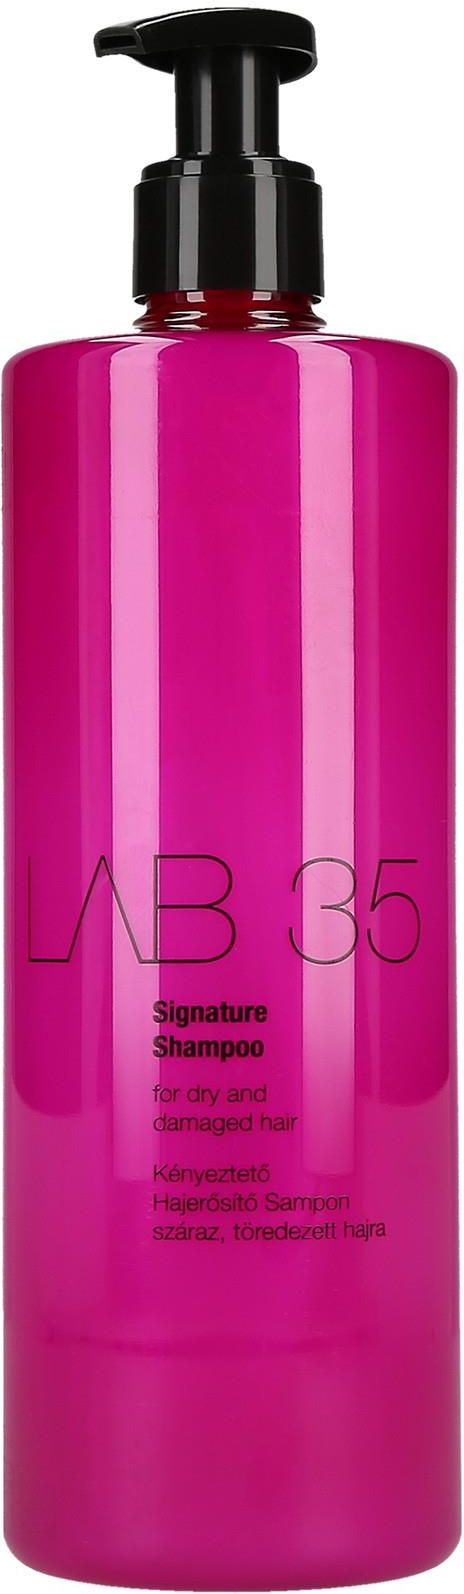 kallos lab 35 szampon signature wzmacniający włosy